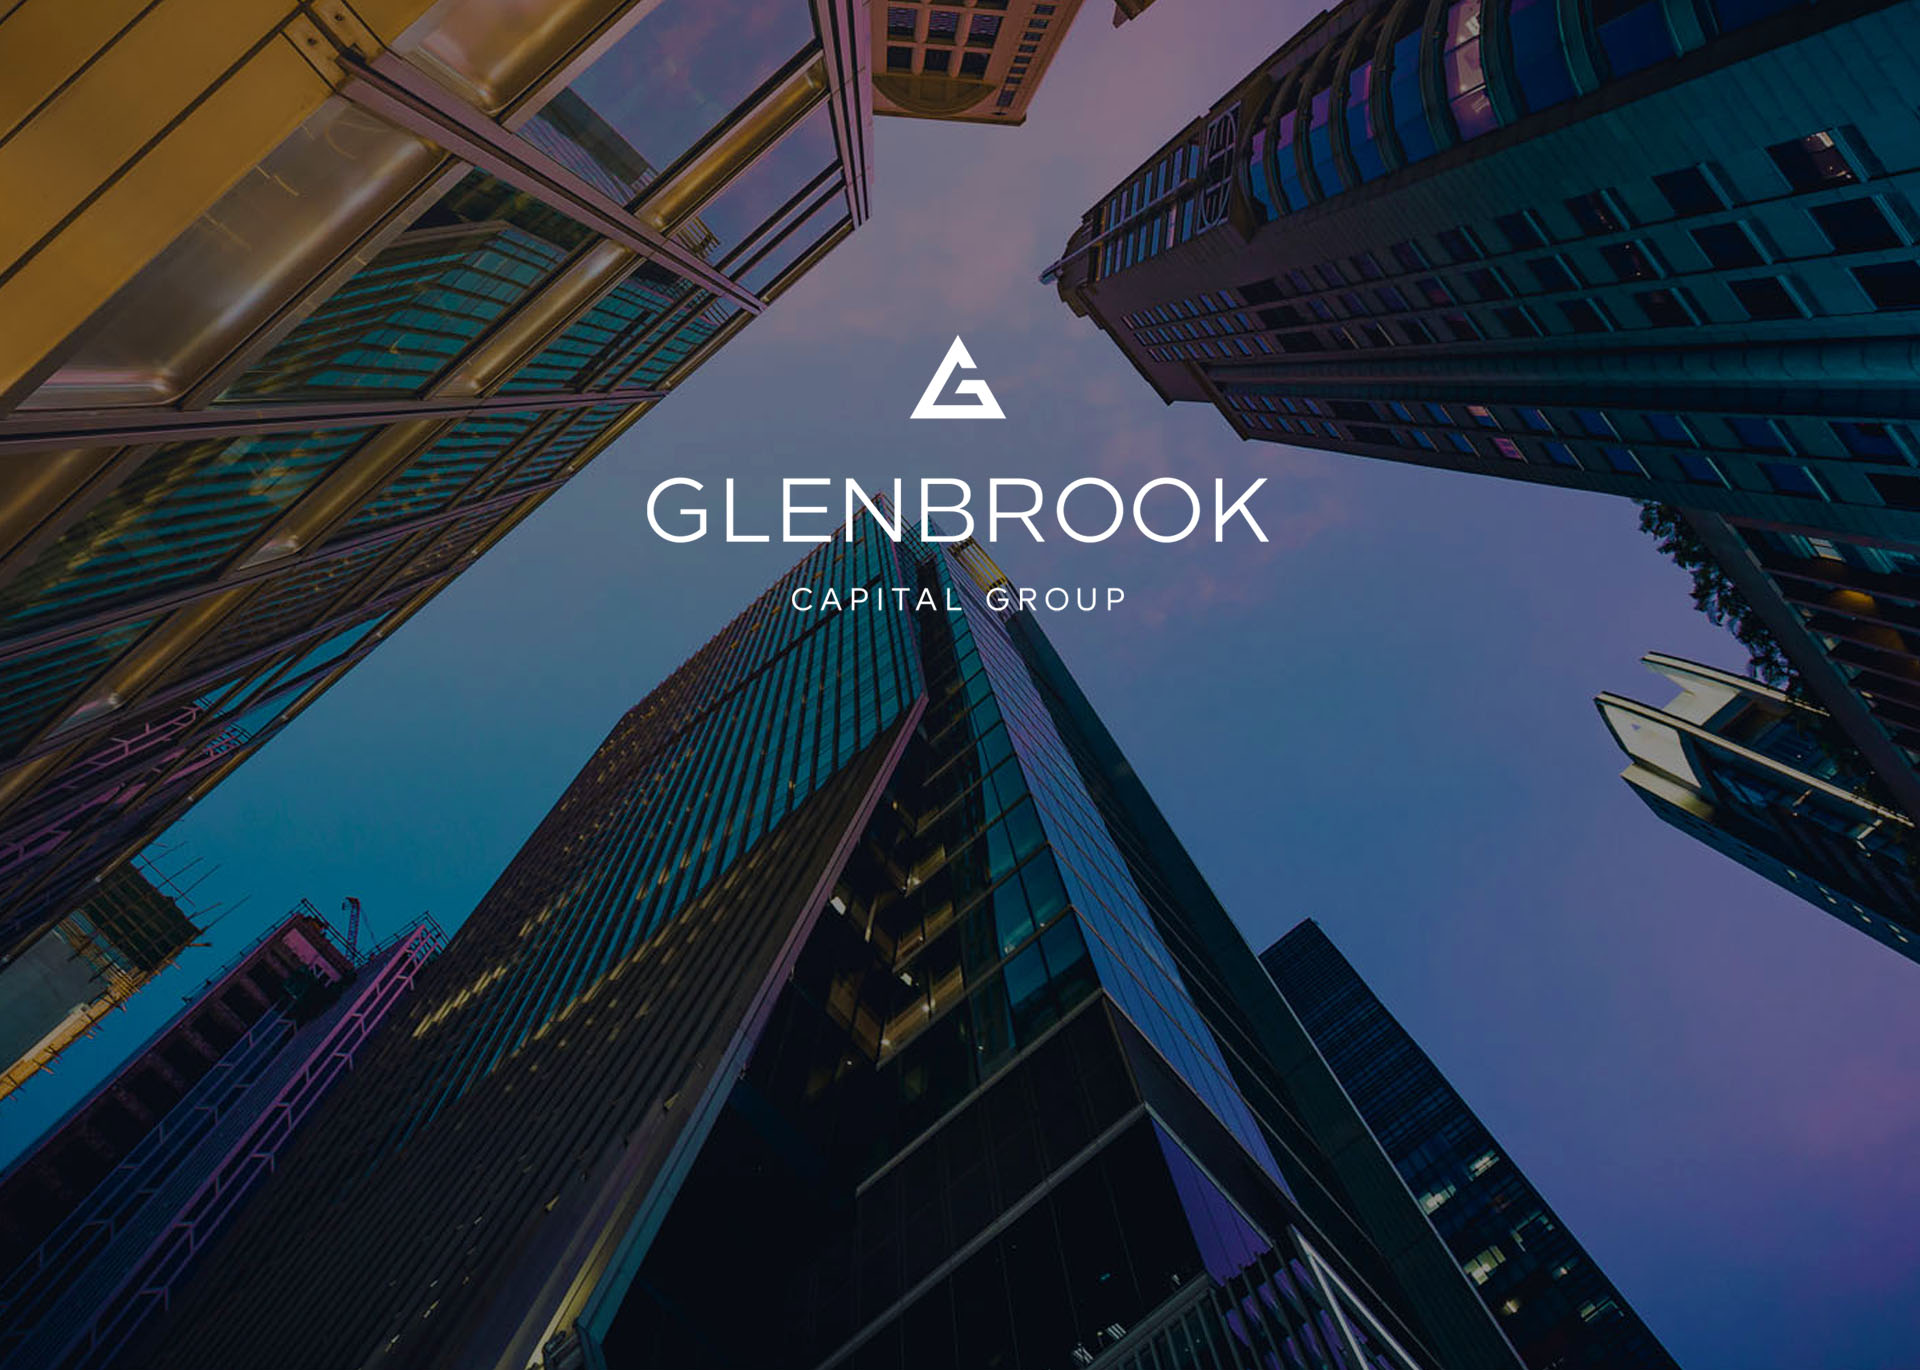 Glenbrook Capital Group